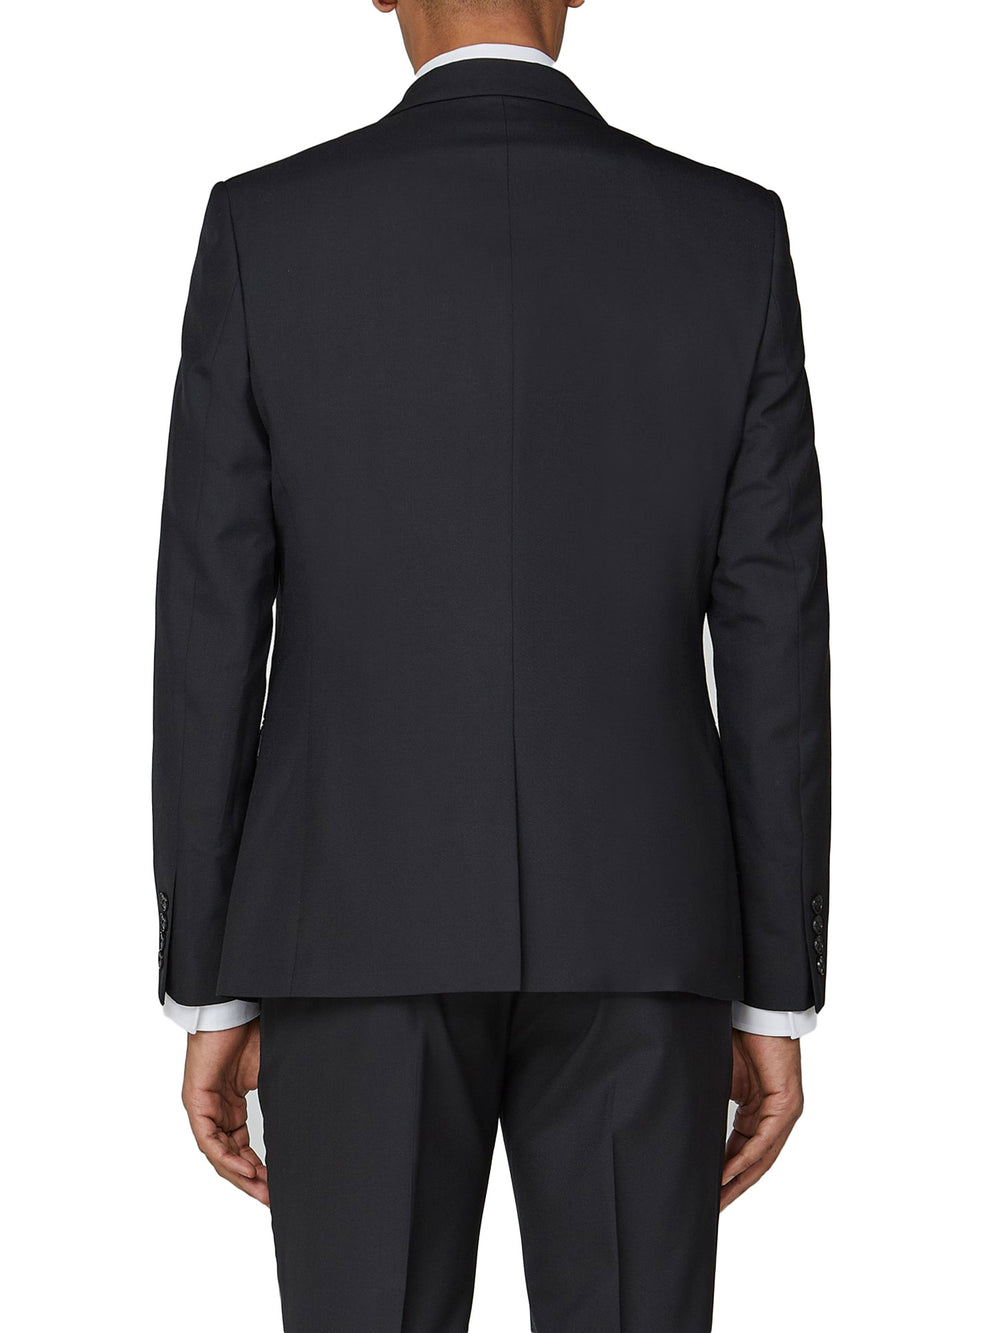 Tonic Camden Fit Suit Jacket - Black